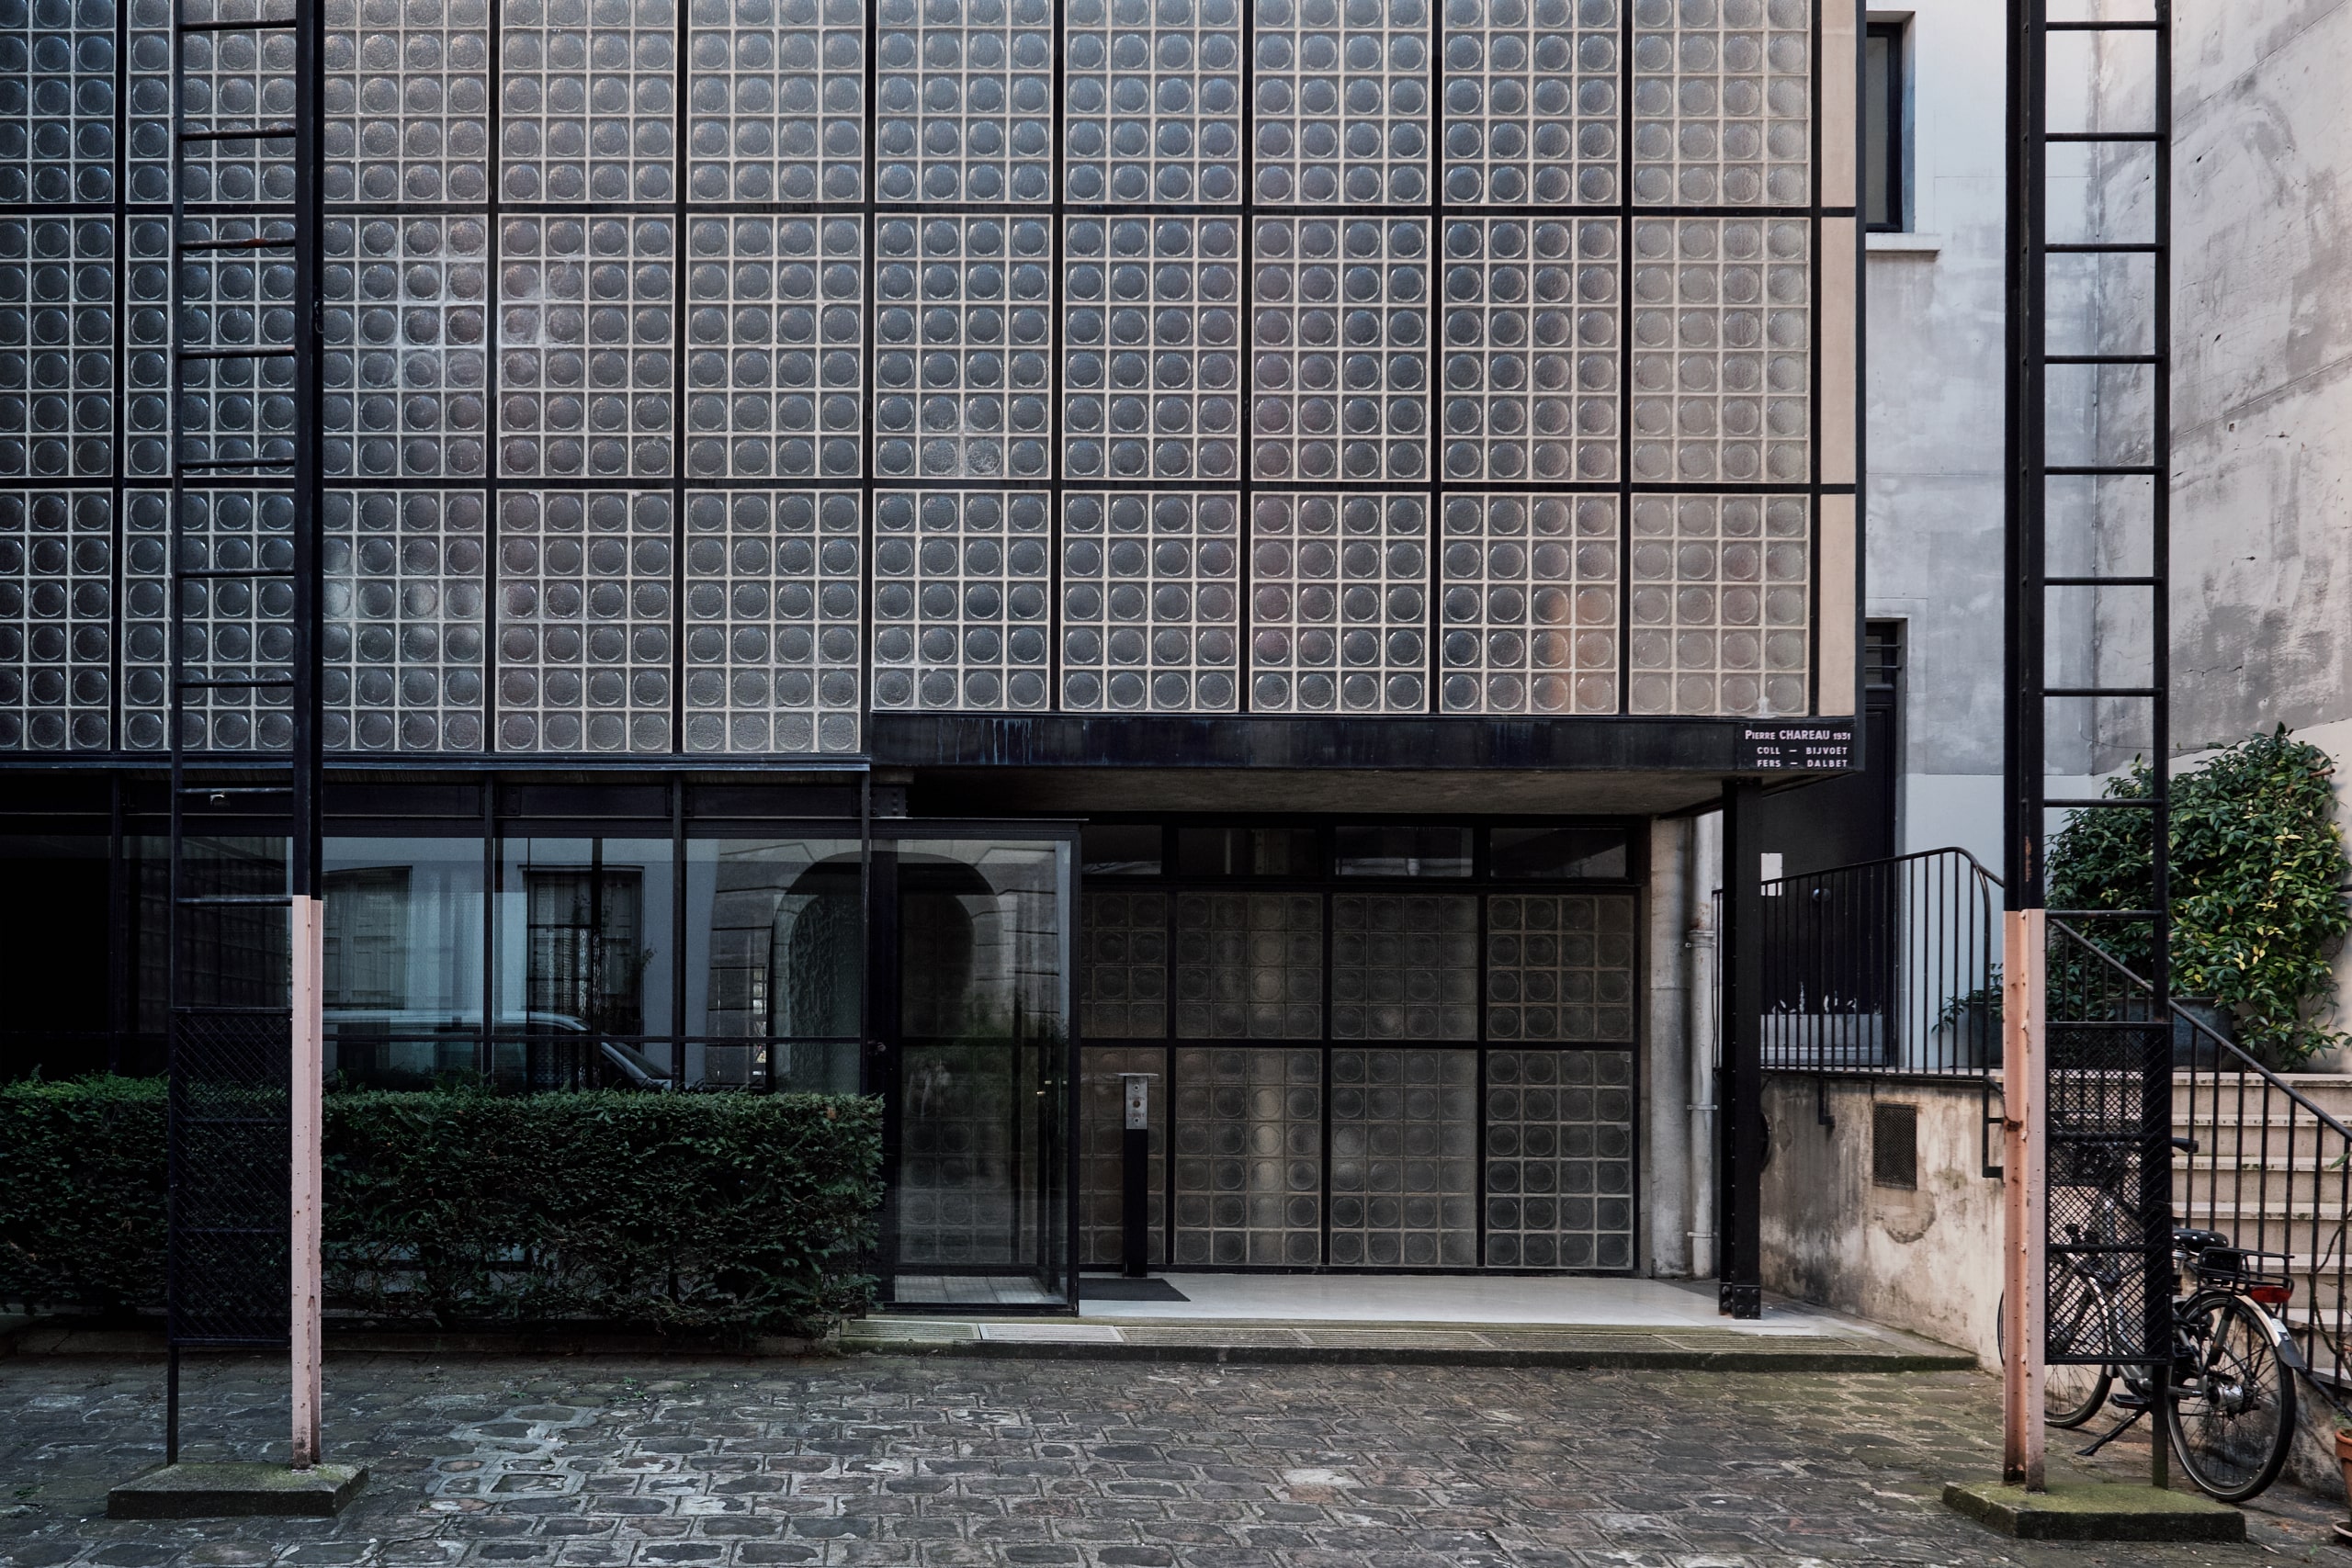 Blick auf die Eingangstüre und die Fassade eines Hauses aus Glasbausteinen. Pierre Chareau, Maison de Verre, Paris, Foto: August Fischer, CC BY-ND 2.0, via flickr